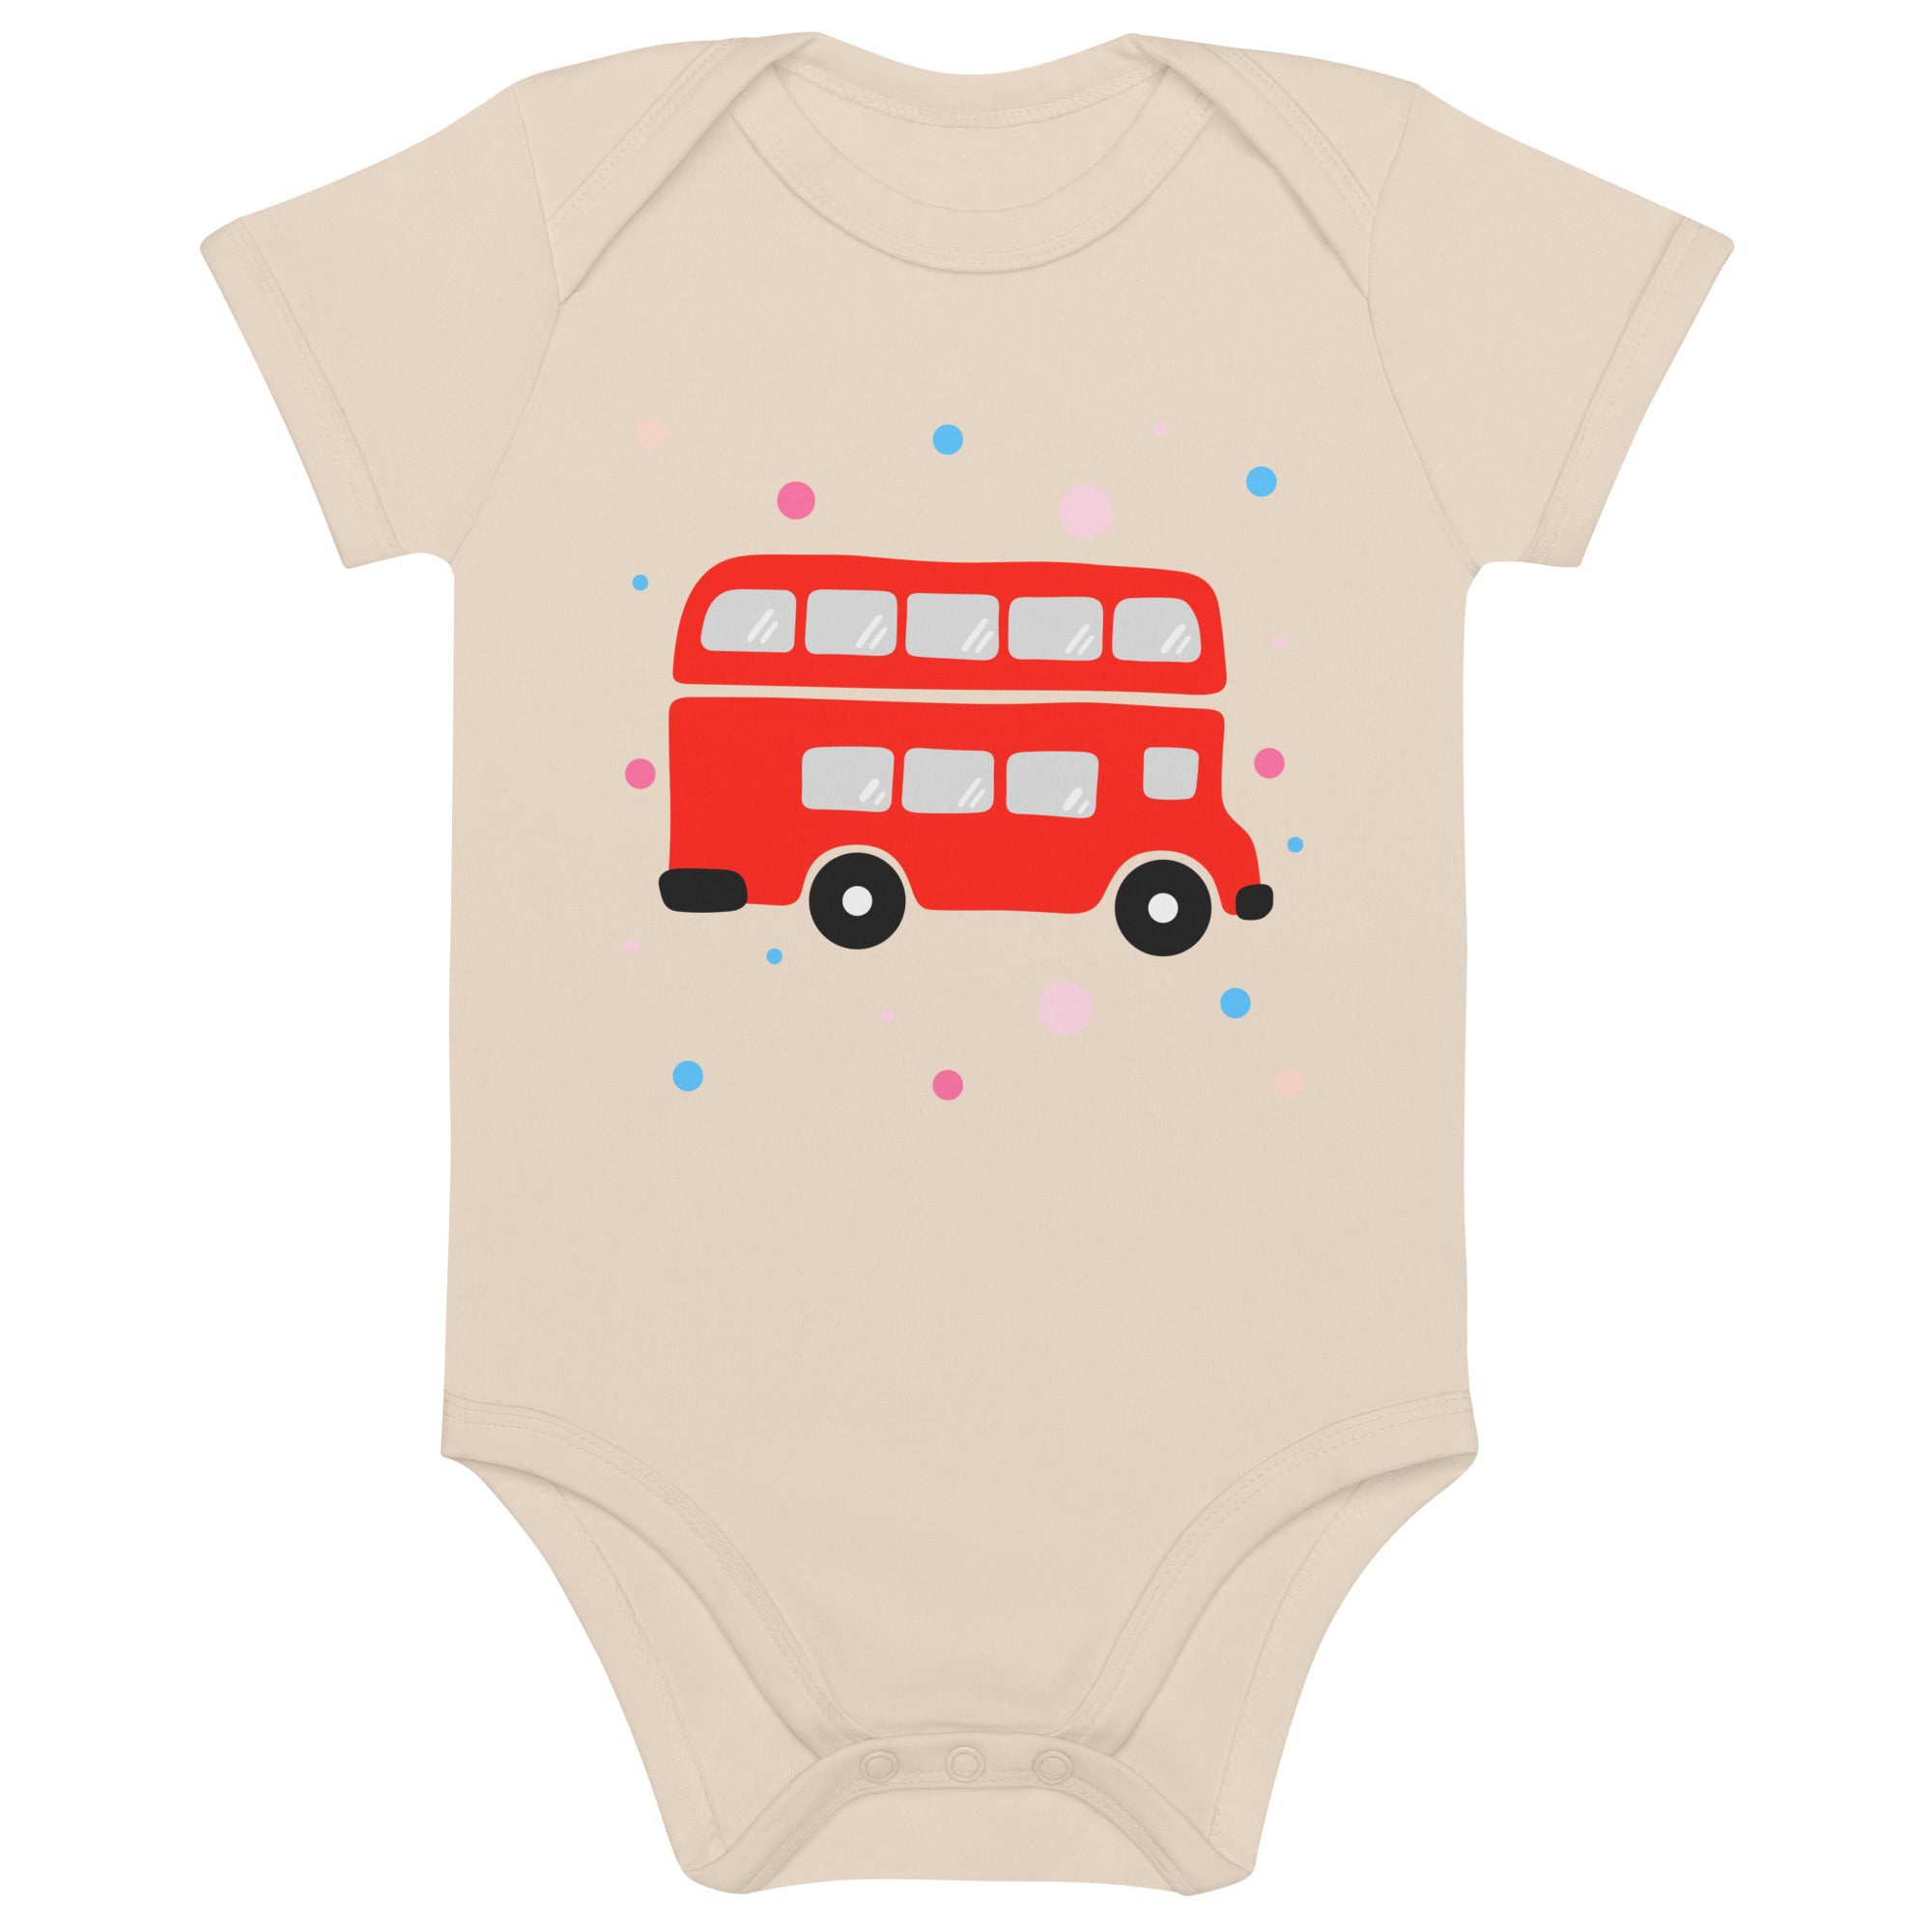 London Doodles - Bus - Organic Cotton Baby Bodysuit